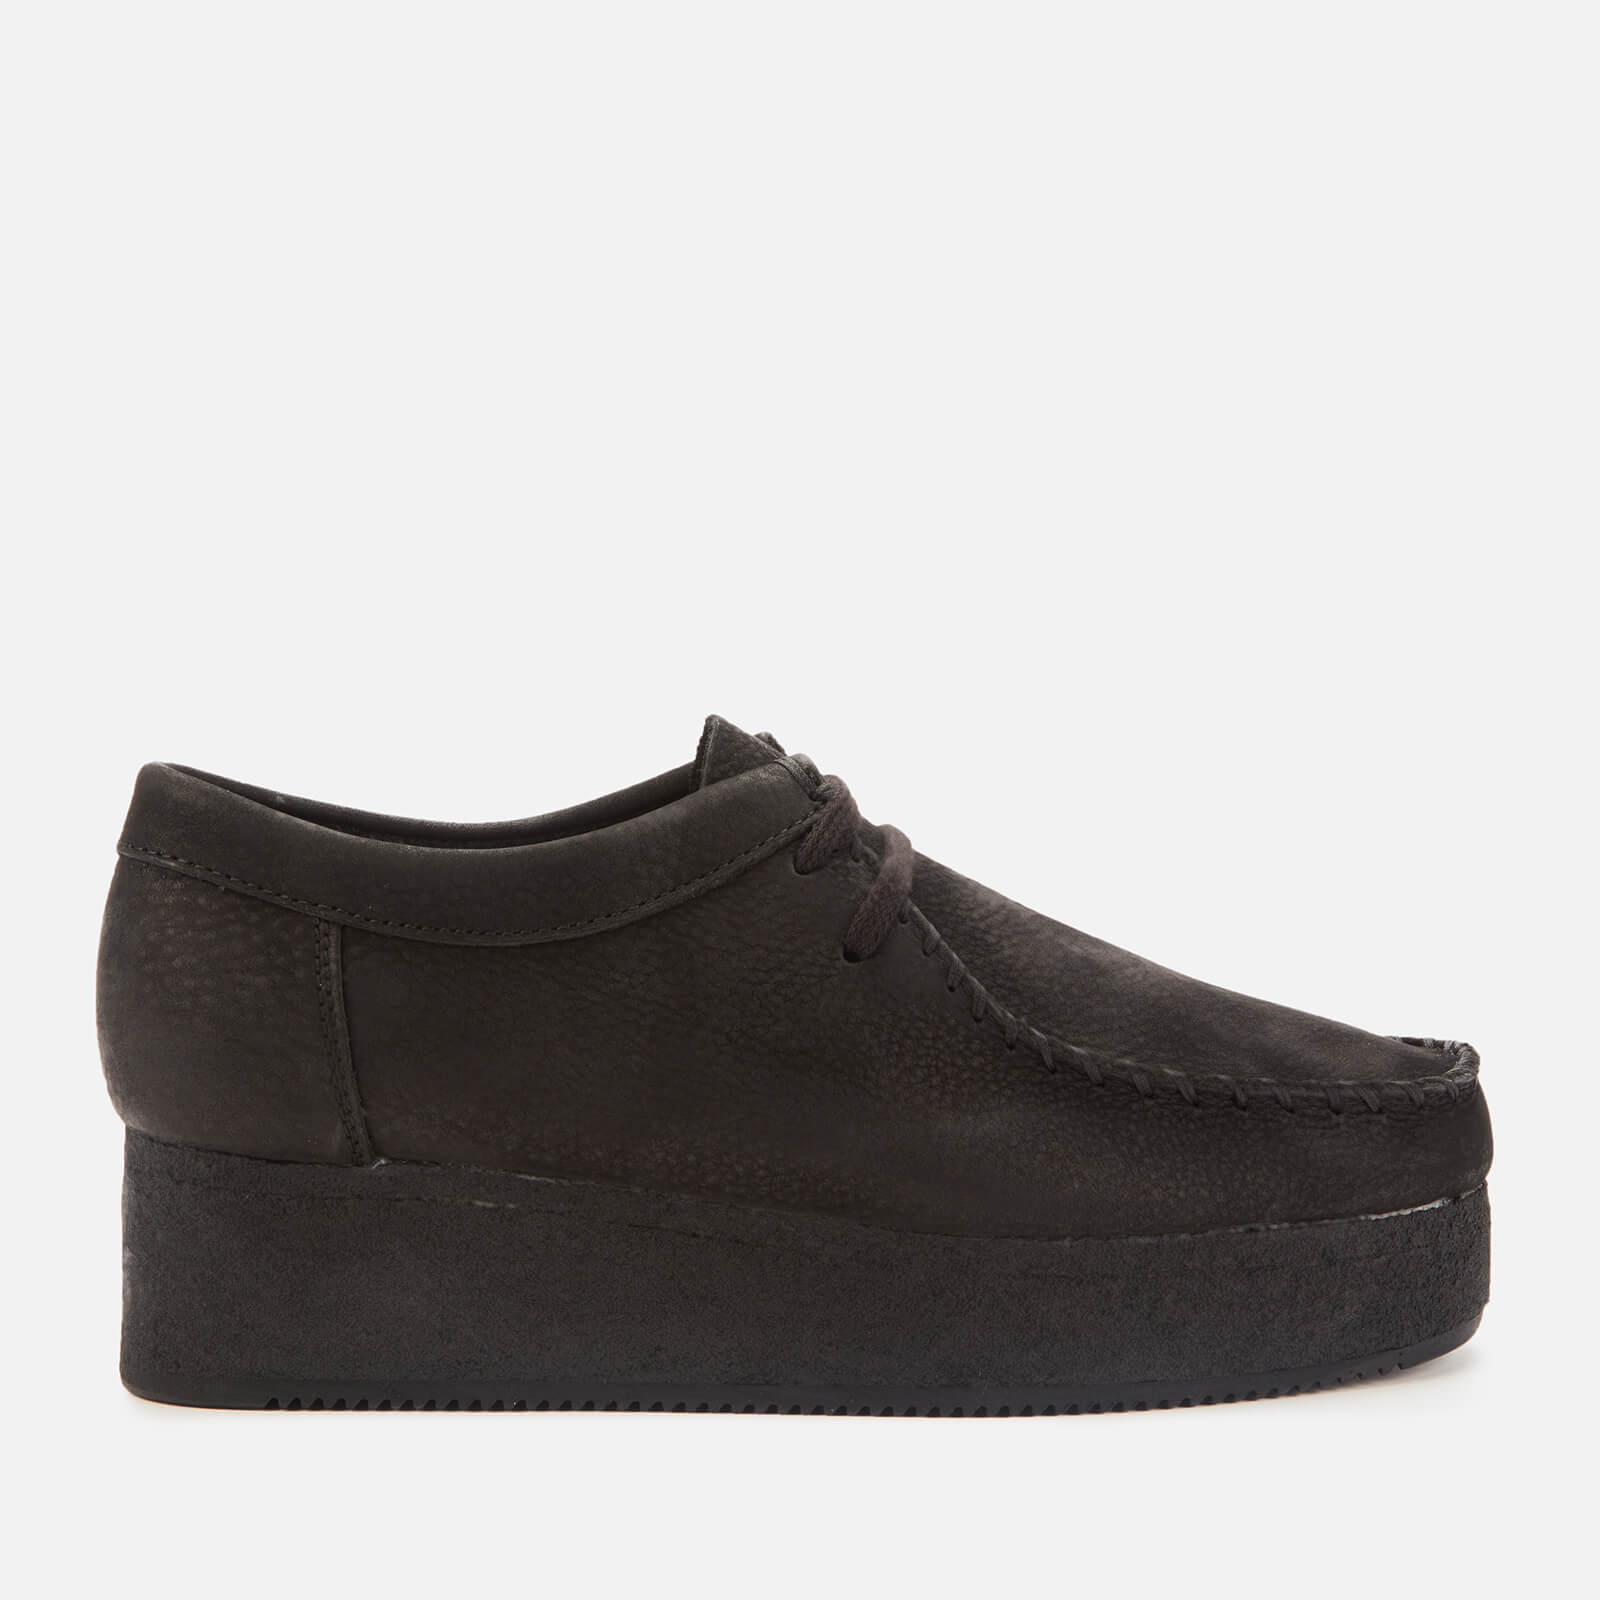 black flatform shoes